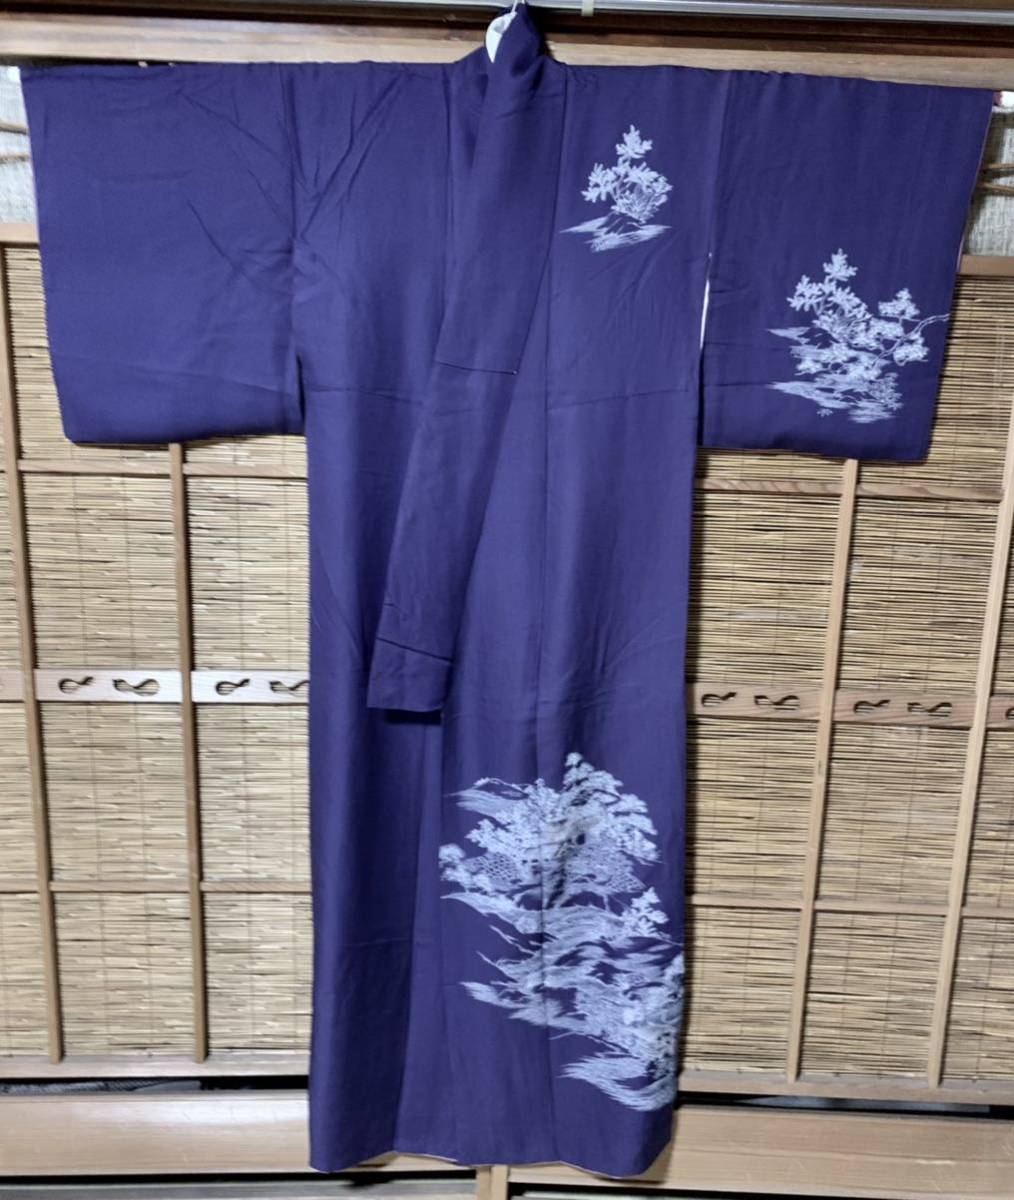  visit wear silk .. pear ground woven purple ground . white. shop ... water. hand ..... feather pattern K 116